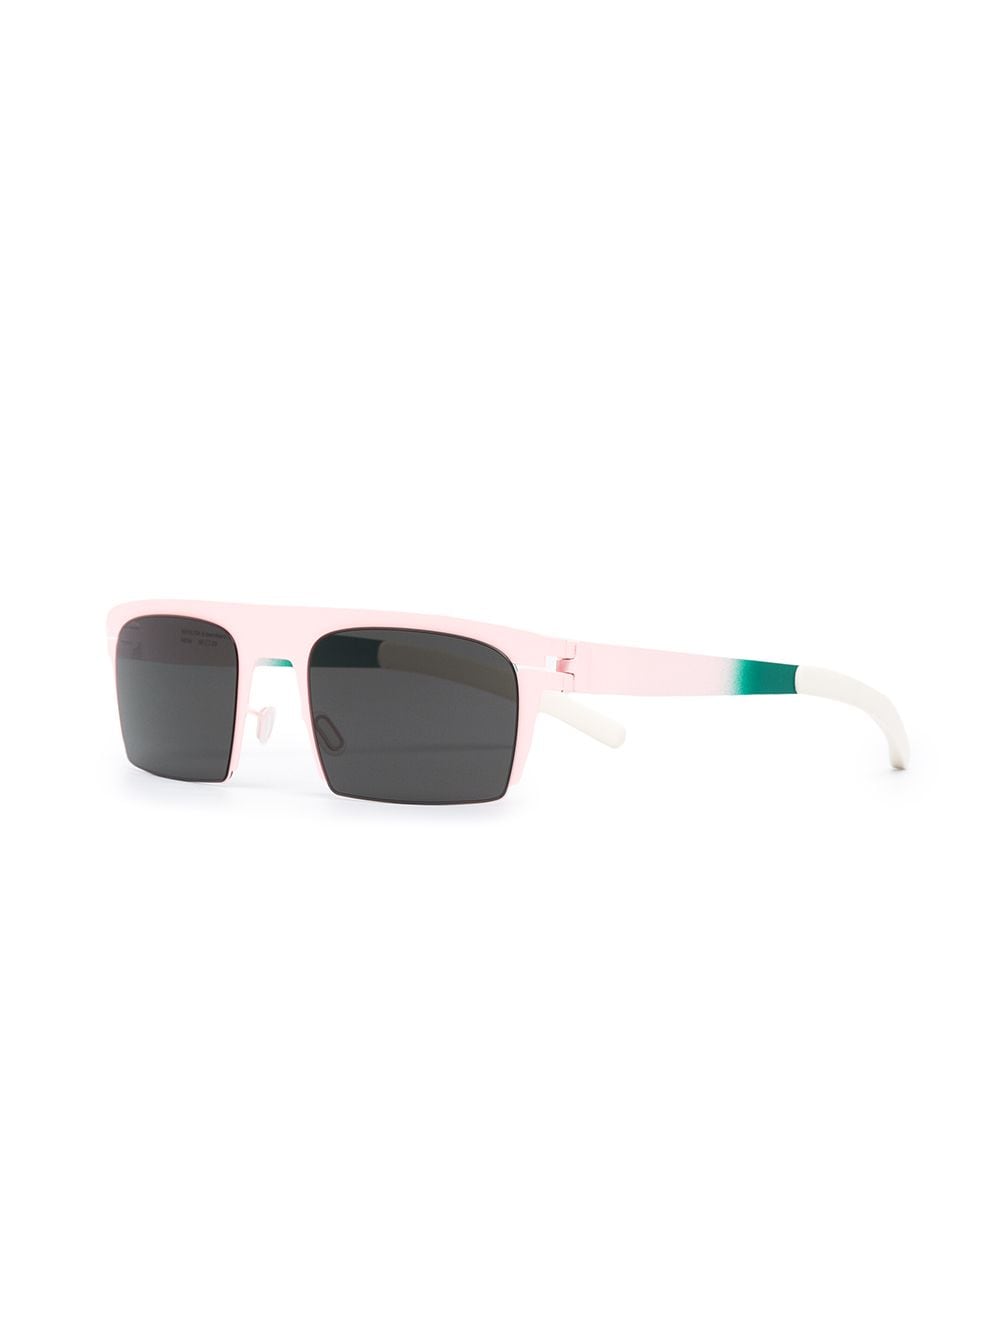 Mykita New Soft zonnebril met kleurverloop - Roze